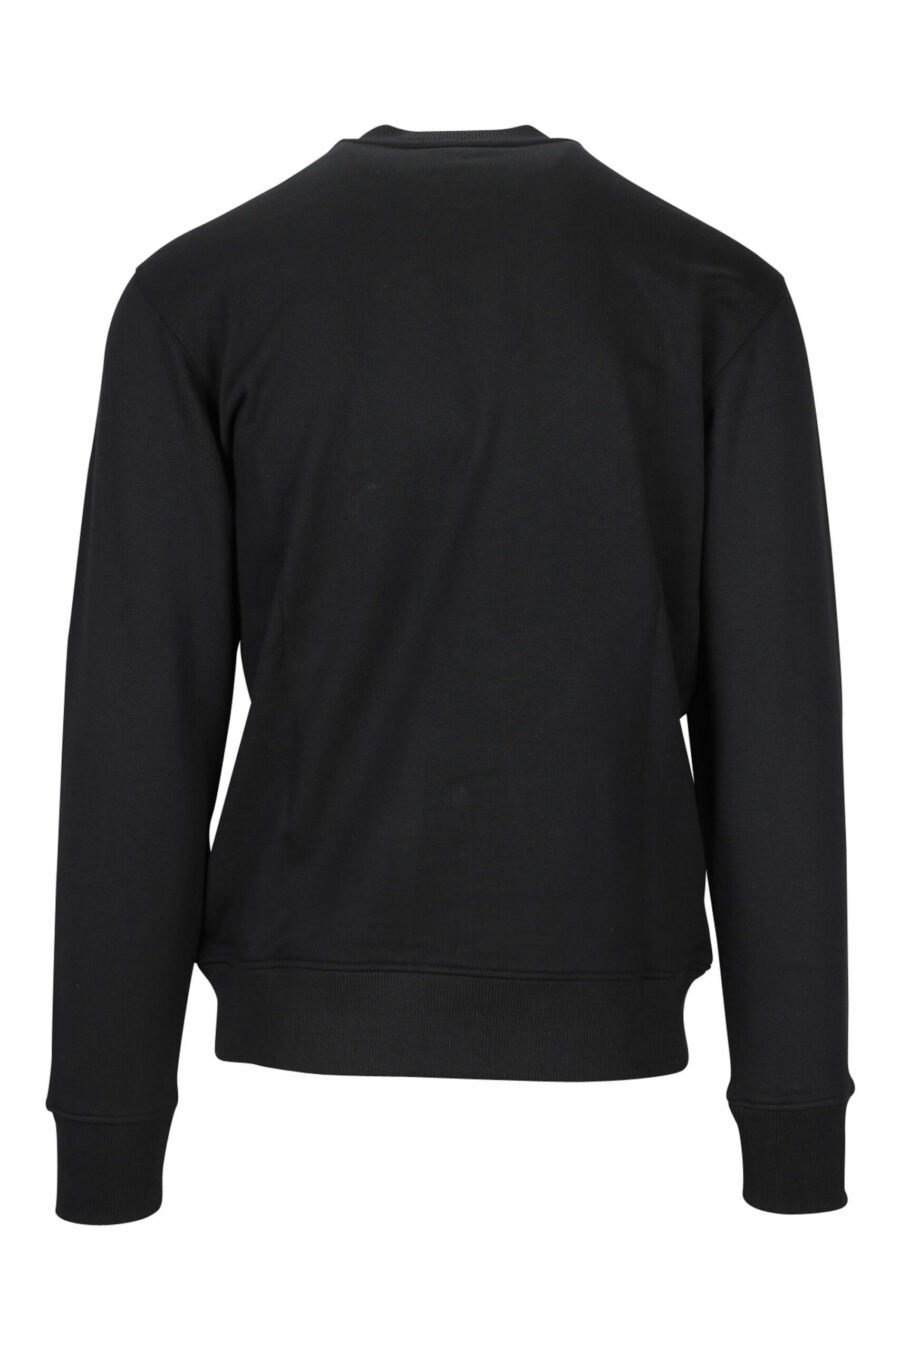 Schwarzes Sweatshirt mit klassischem Maxilogue in glänzendem Gold - 8052019456998 1 skaliert